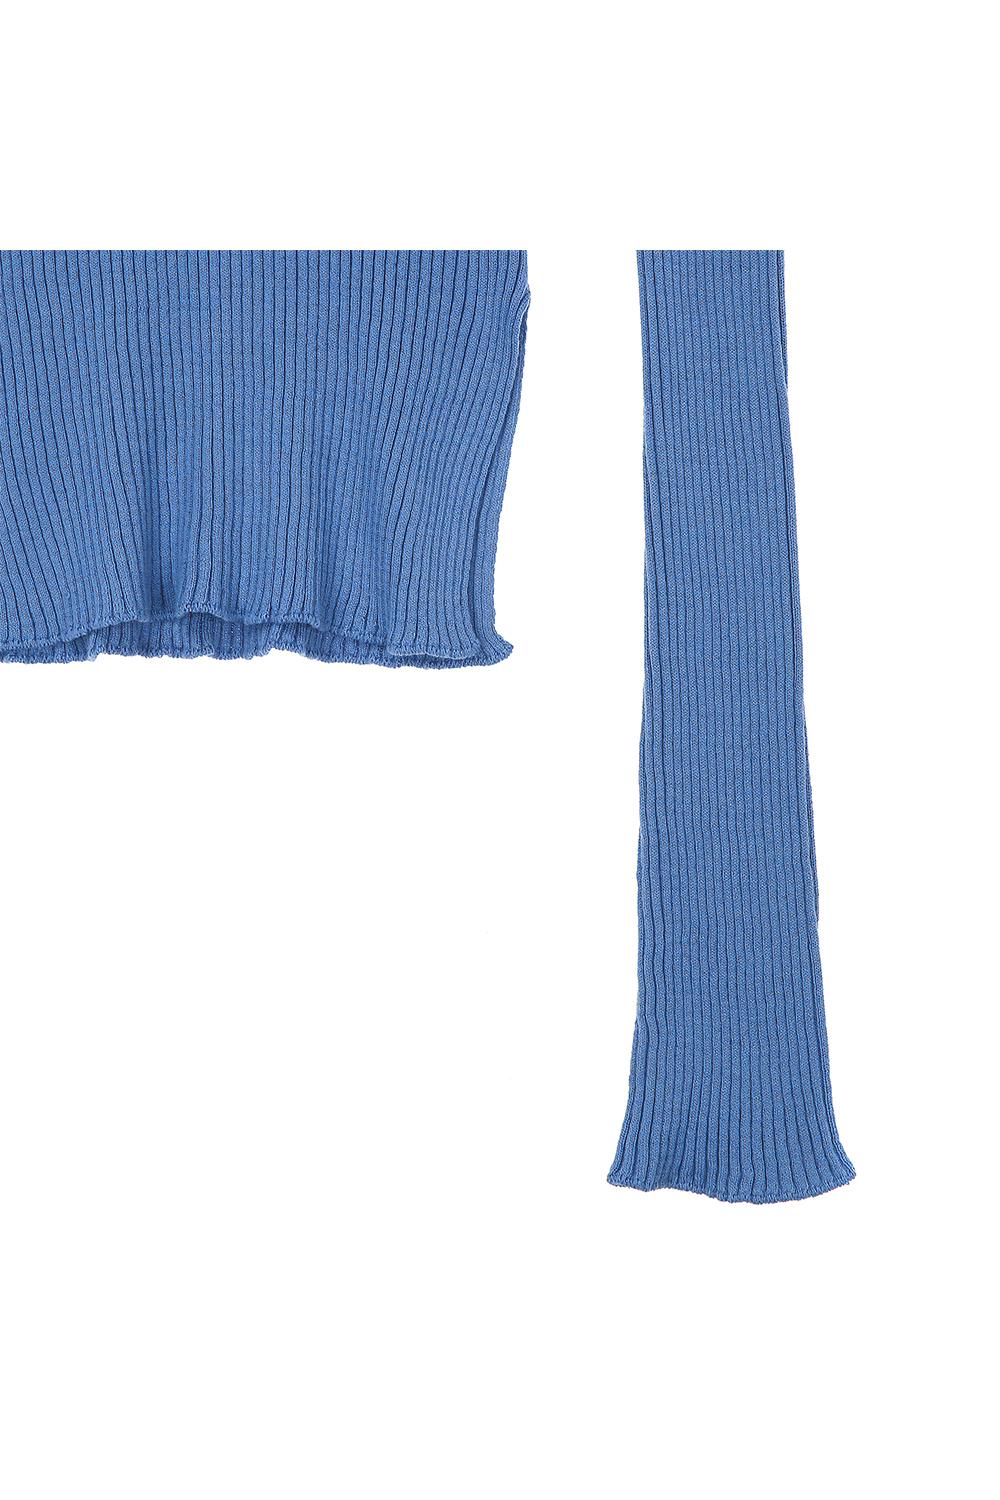 suspenders skirt/pants detail image-S7L12